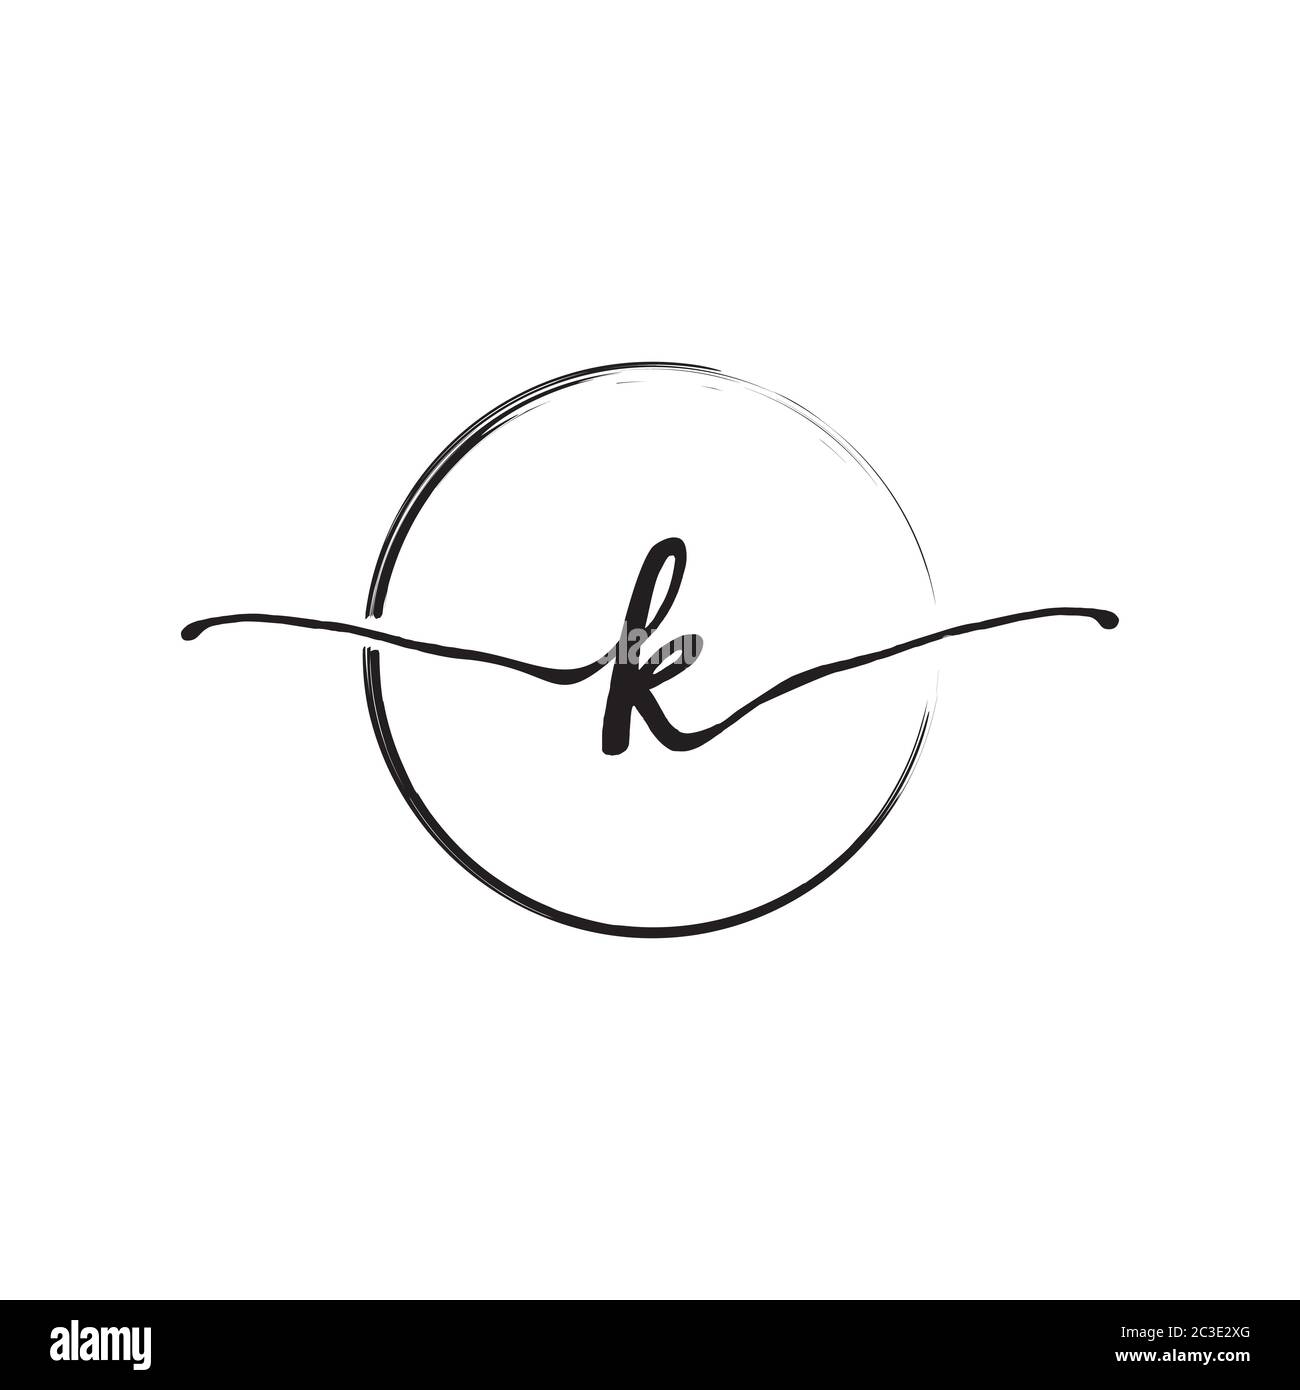 Lettera K scrittura a mano minuscola con disegno a pennello circolare Illustrazione Vettoriale